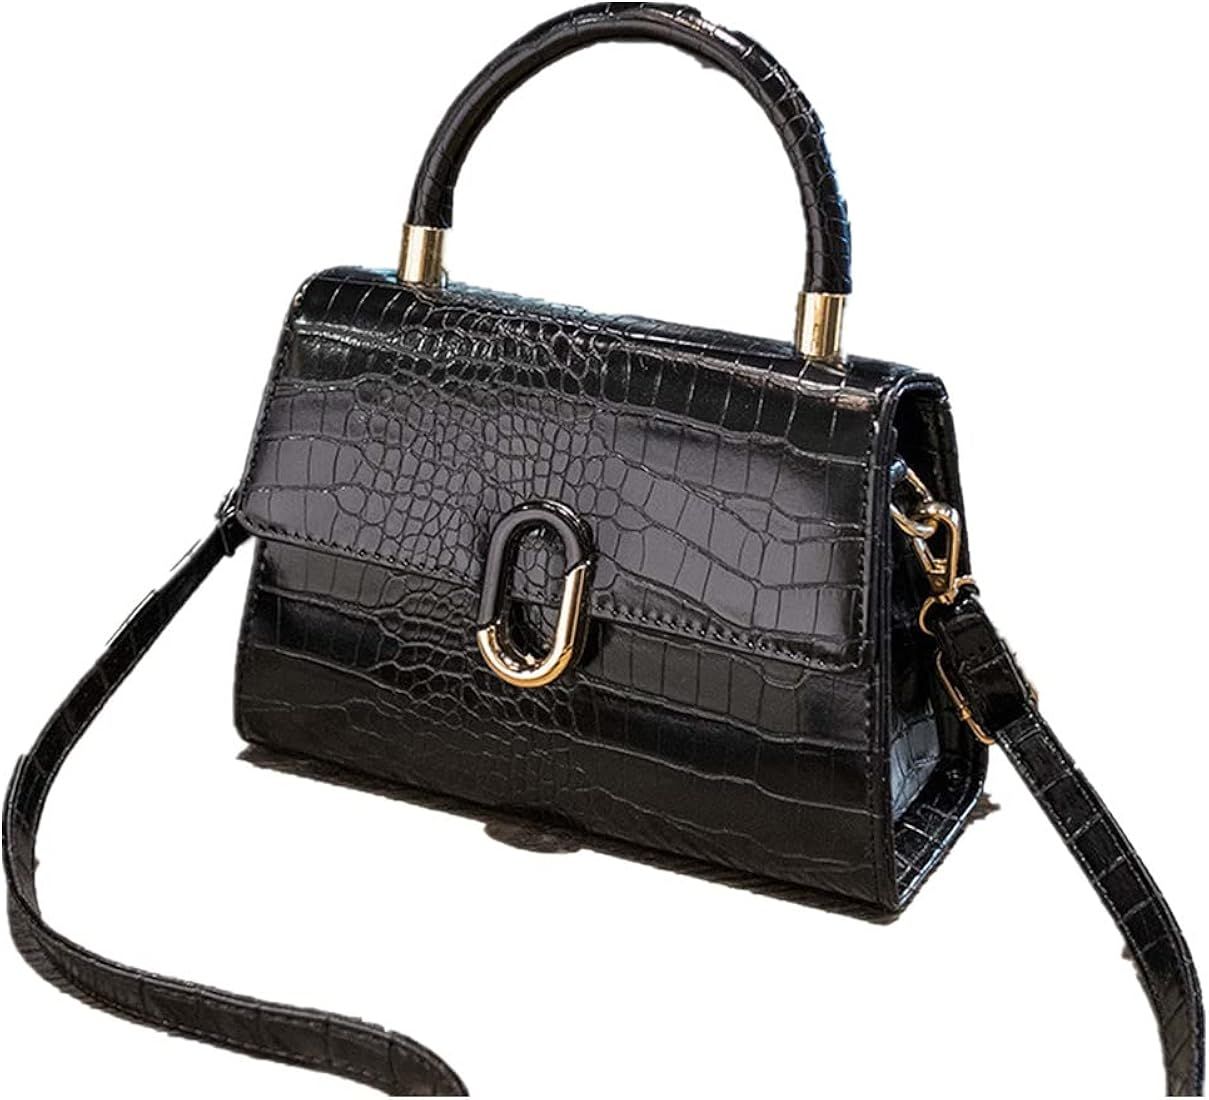 Ladies Handbag - Versatile Fashion One Shoulder Hand Messenger Bag - Suitable for Work, Daily Par... | Amazon (US)